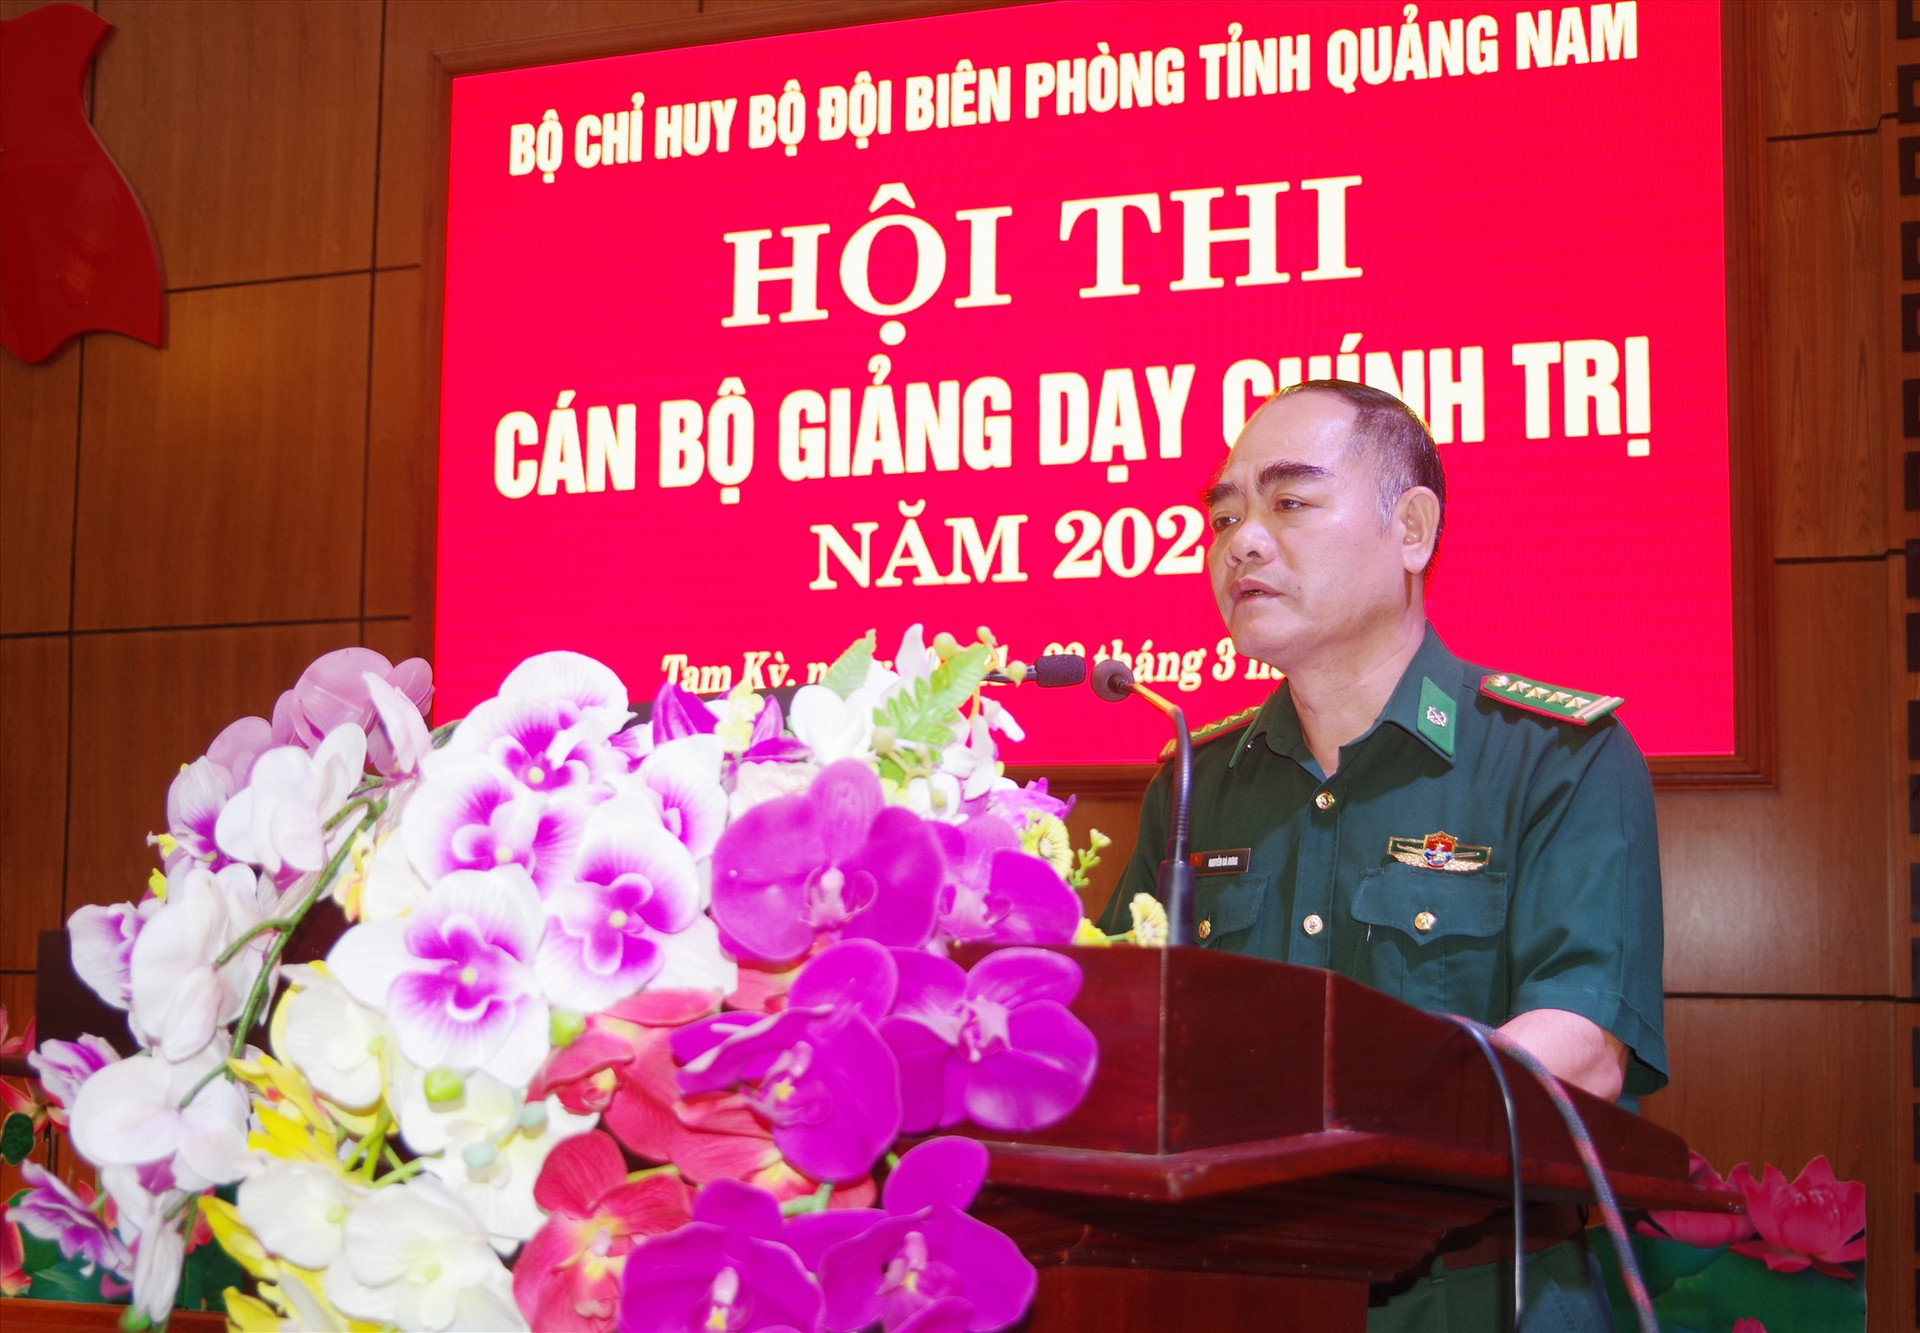 Đại tá Nguyễn Bá Hưng - Phó Chính ủy BĐBP tỉnh phát biểu khai mạc hội thi.Ảnh: HỒNG ANH